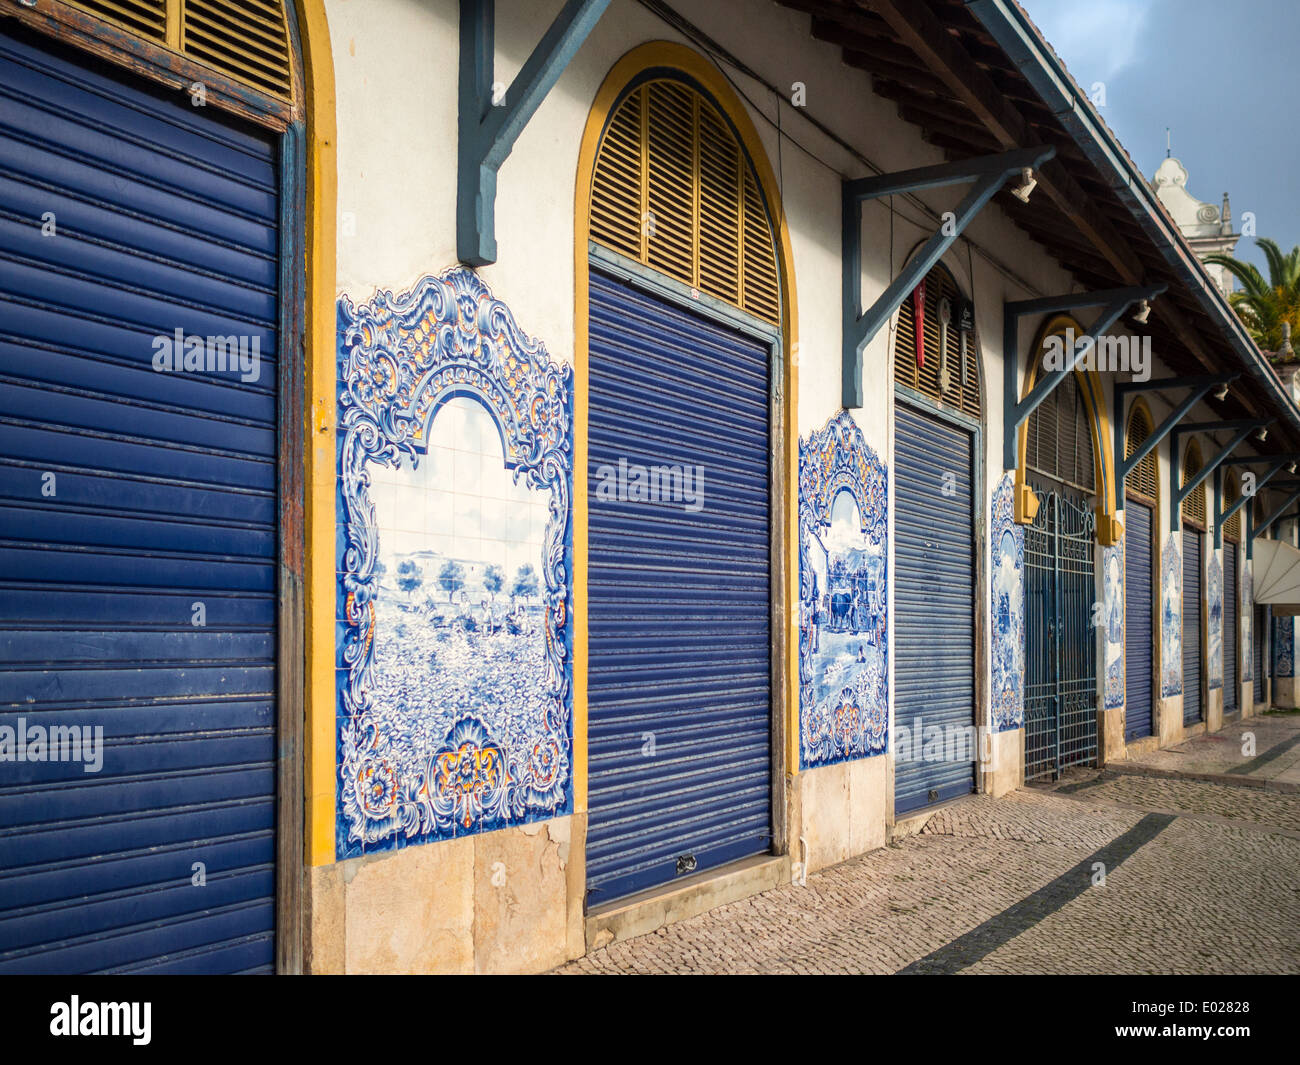 Mercado Santarem edificio decorado con baldosas azules y blancas Foto de stock